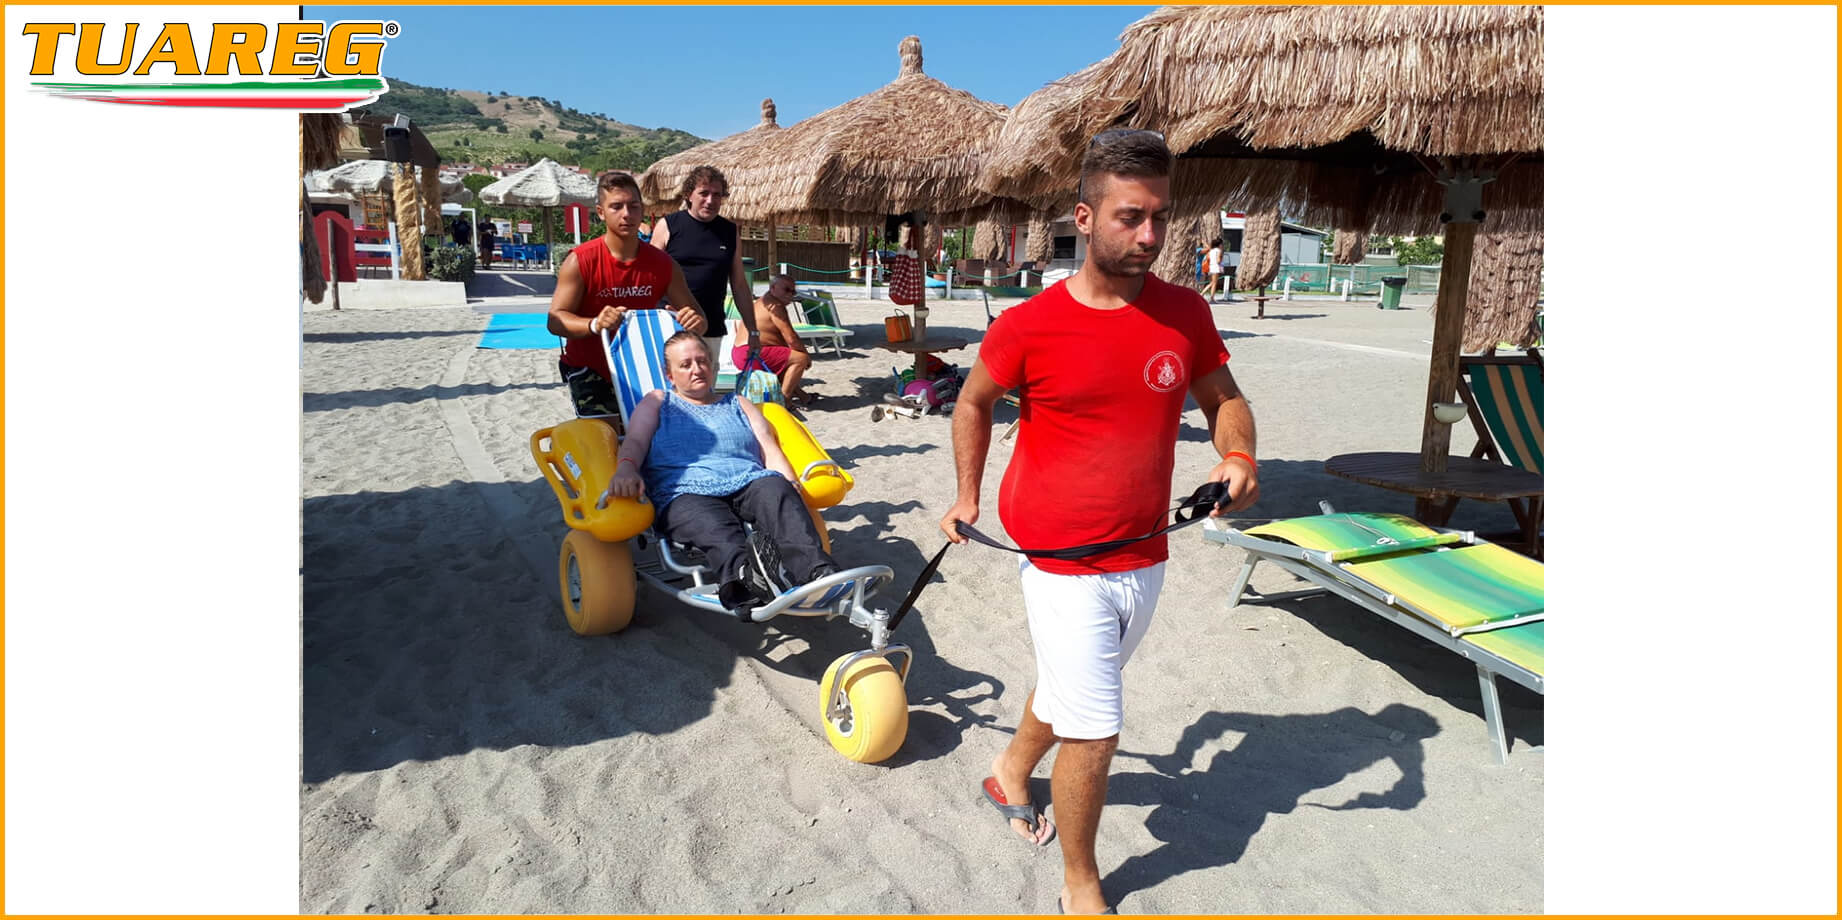 Chaise de plage Float pour Personnes à Mobilité Réduite - Tuareg Access - Produit/Accessoire pour l'Accessibilité à la Plage